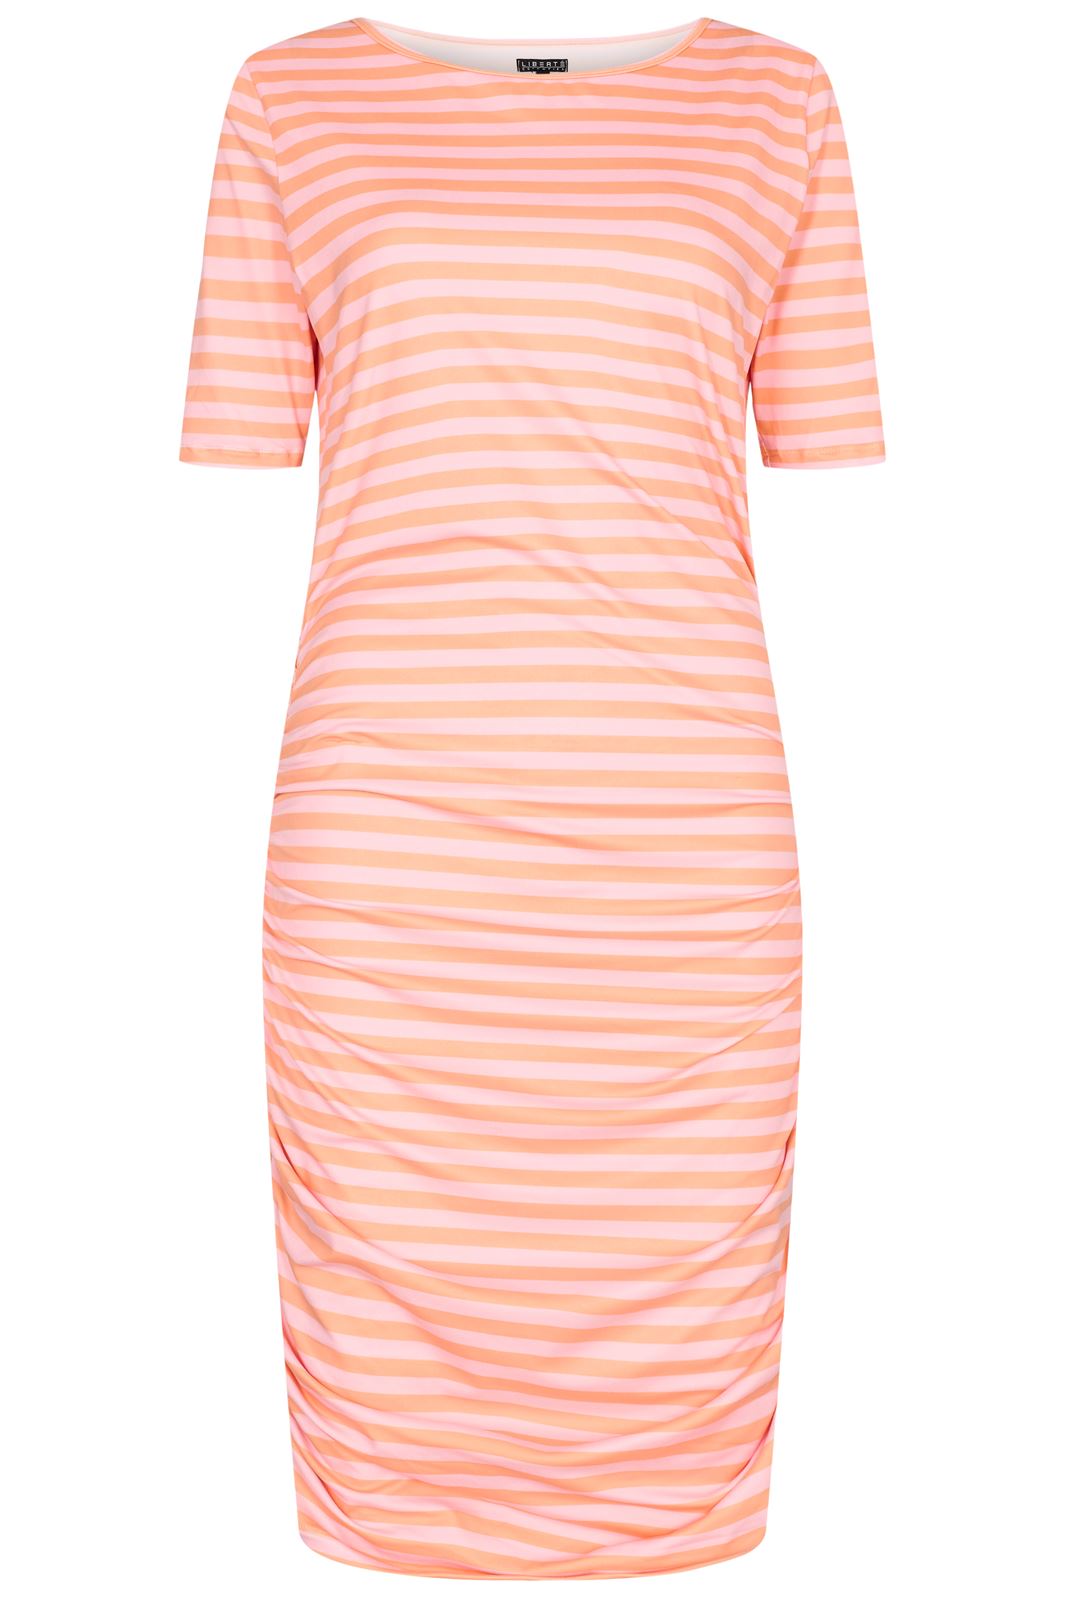 Forudbestilling - Liberte - Alma Dress3 - Orange Rose Stripe (Maj) Kjoler 